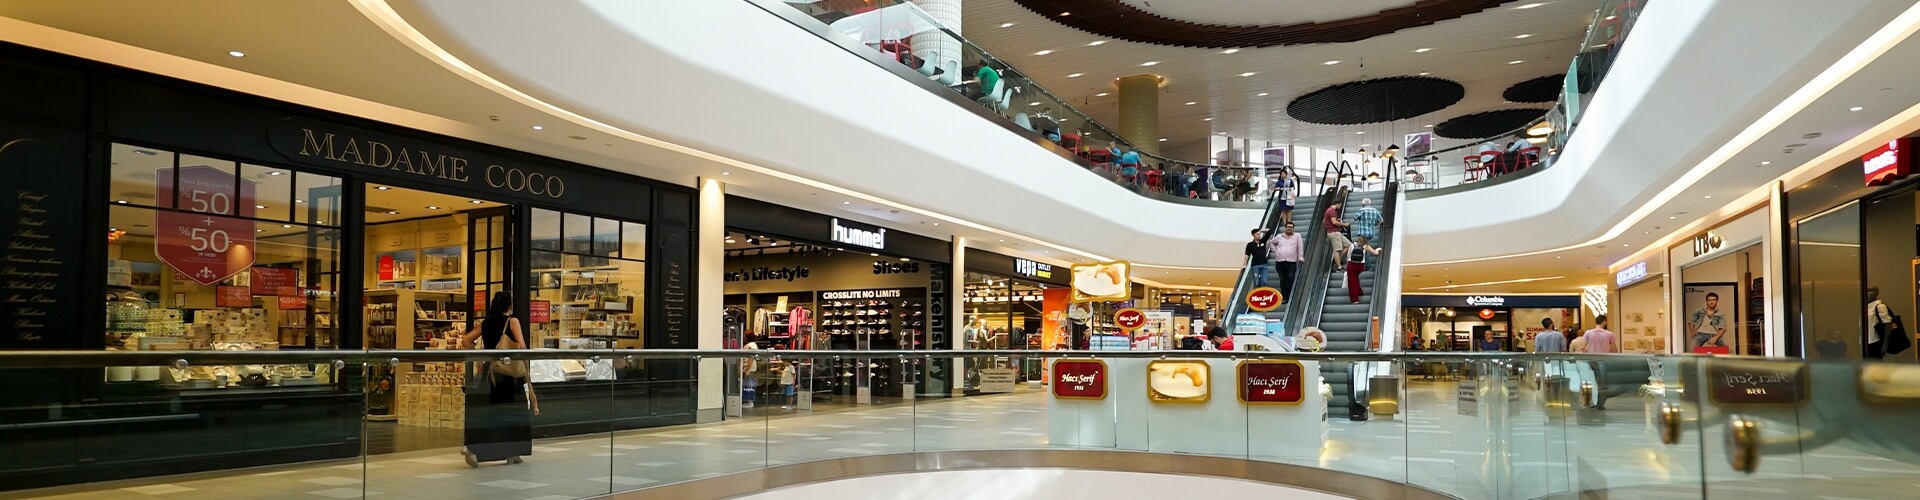 İstanbul Optimum Premium Outlet Alışveriş Merkezi - Hizmetler